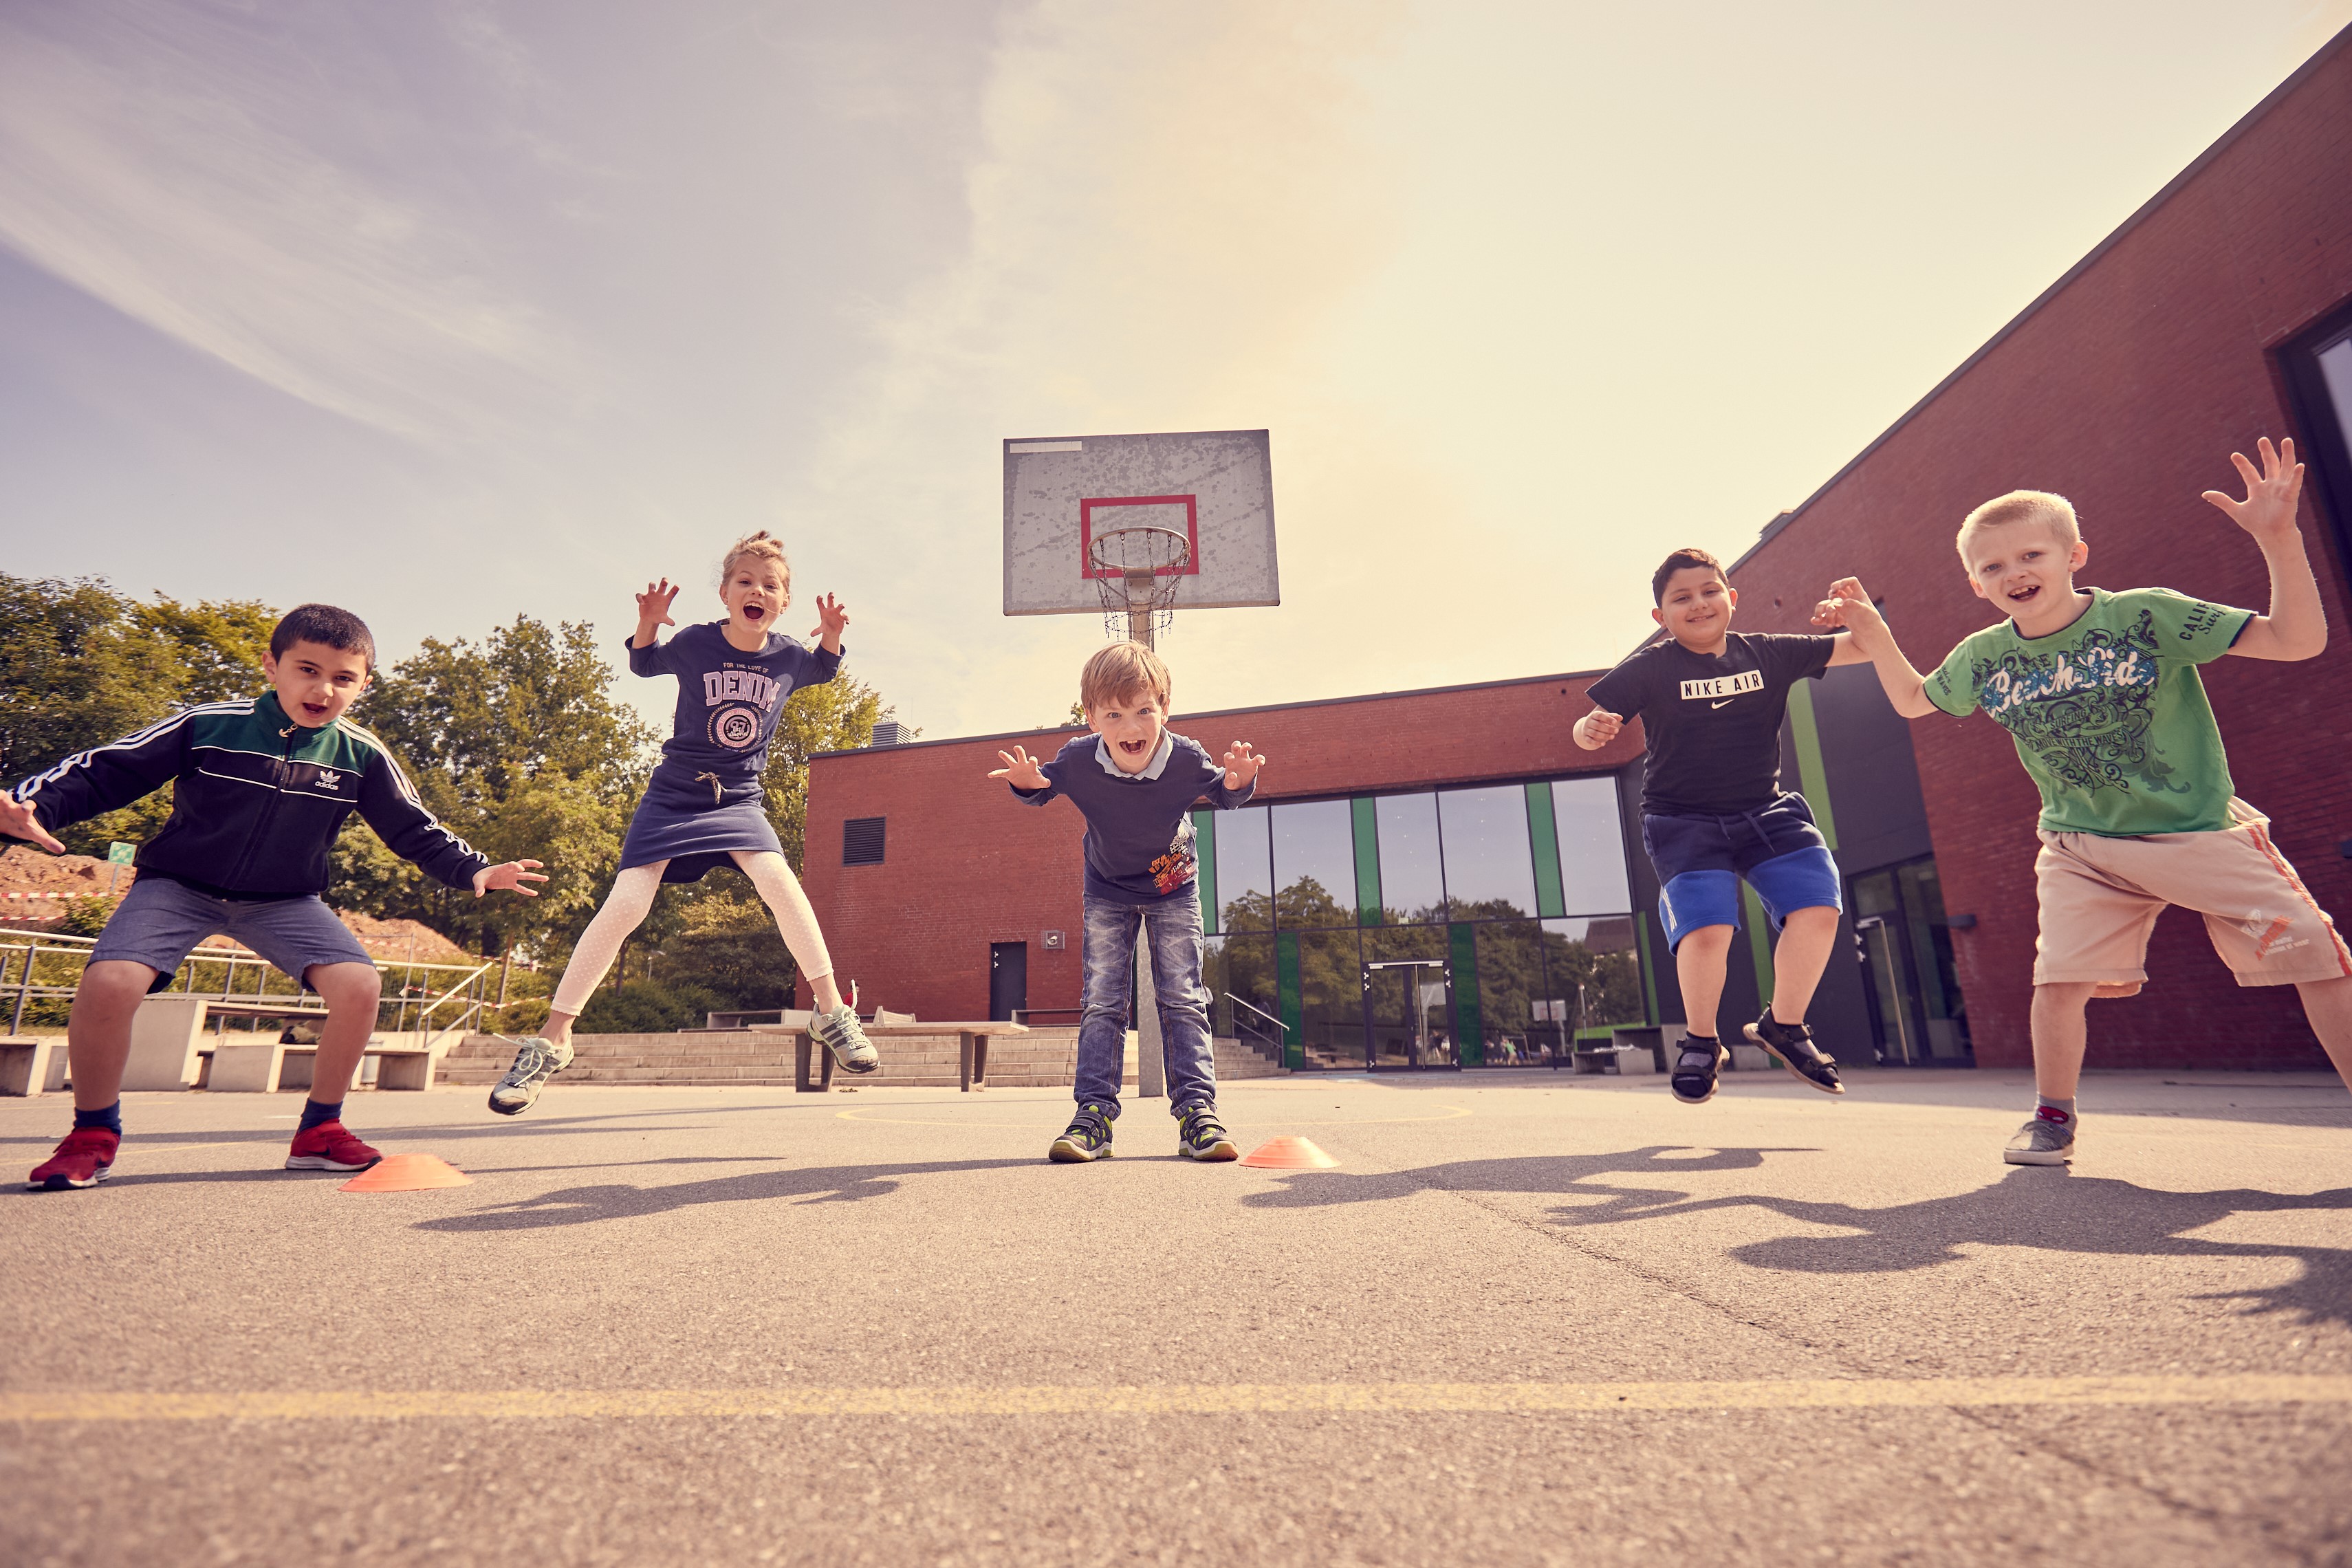 Der Große Stern des Sports 2020 geht an die Initiative "IcanDo@School“ des IcanDo e.V. aus Hannover. (Foto: Verein)